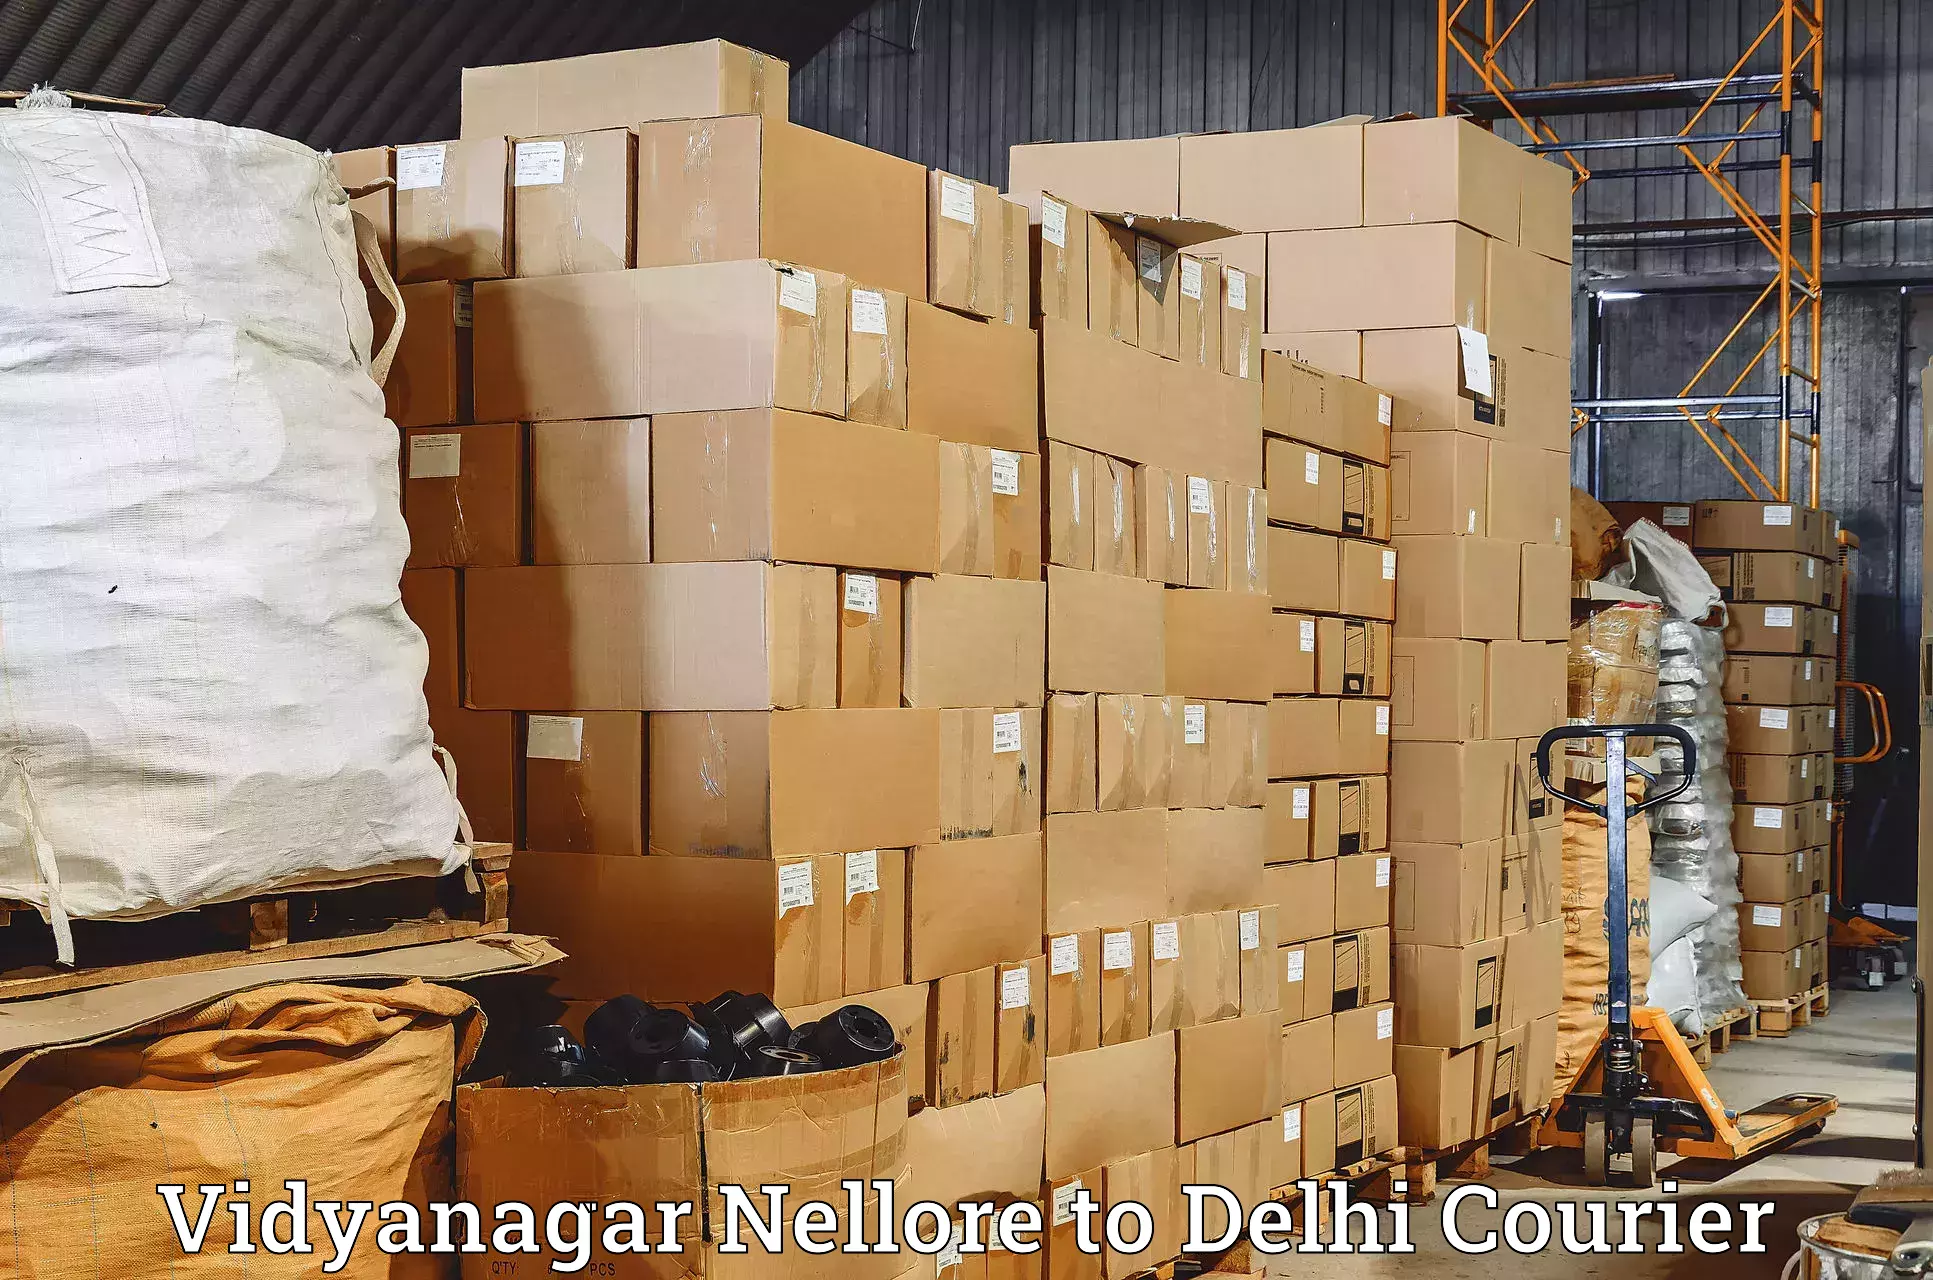 Digital courier platforms Vidyanagar Nellore to Subhash Nagar